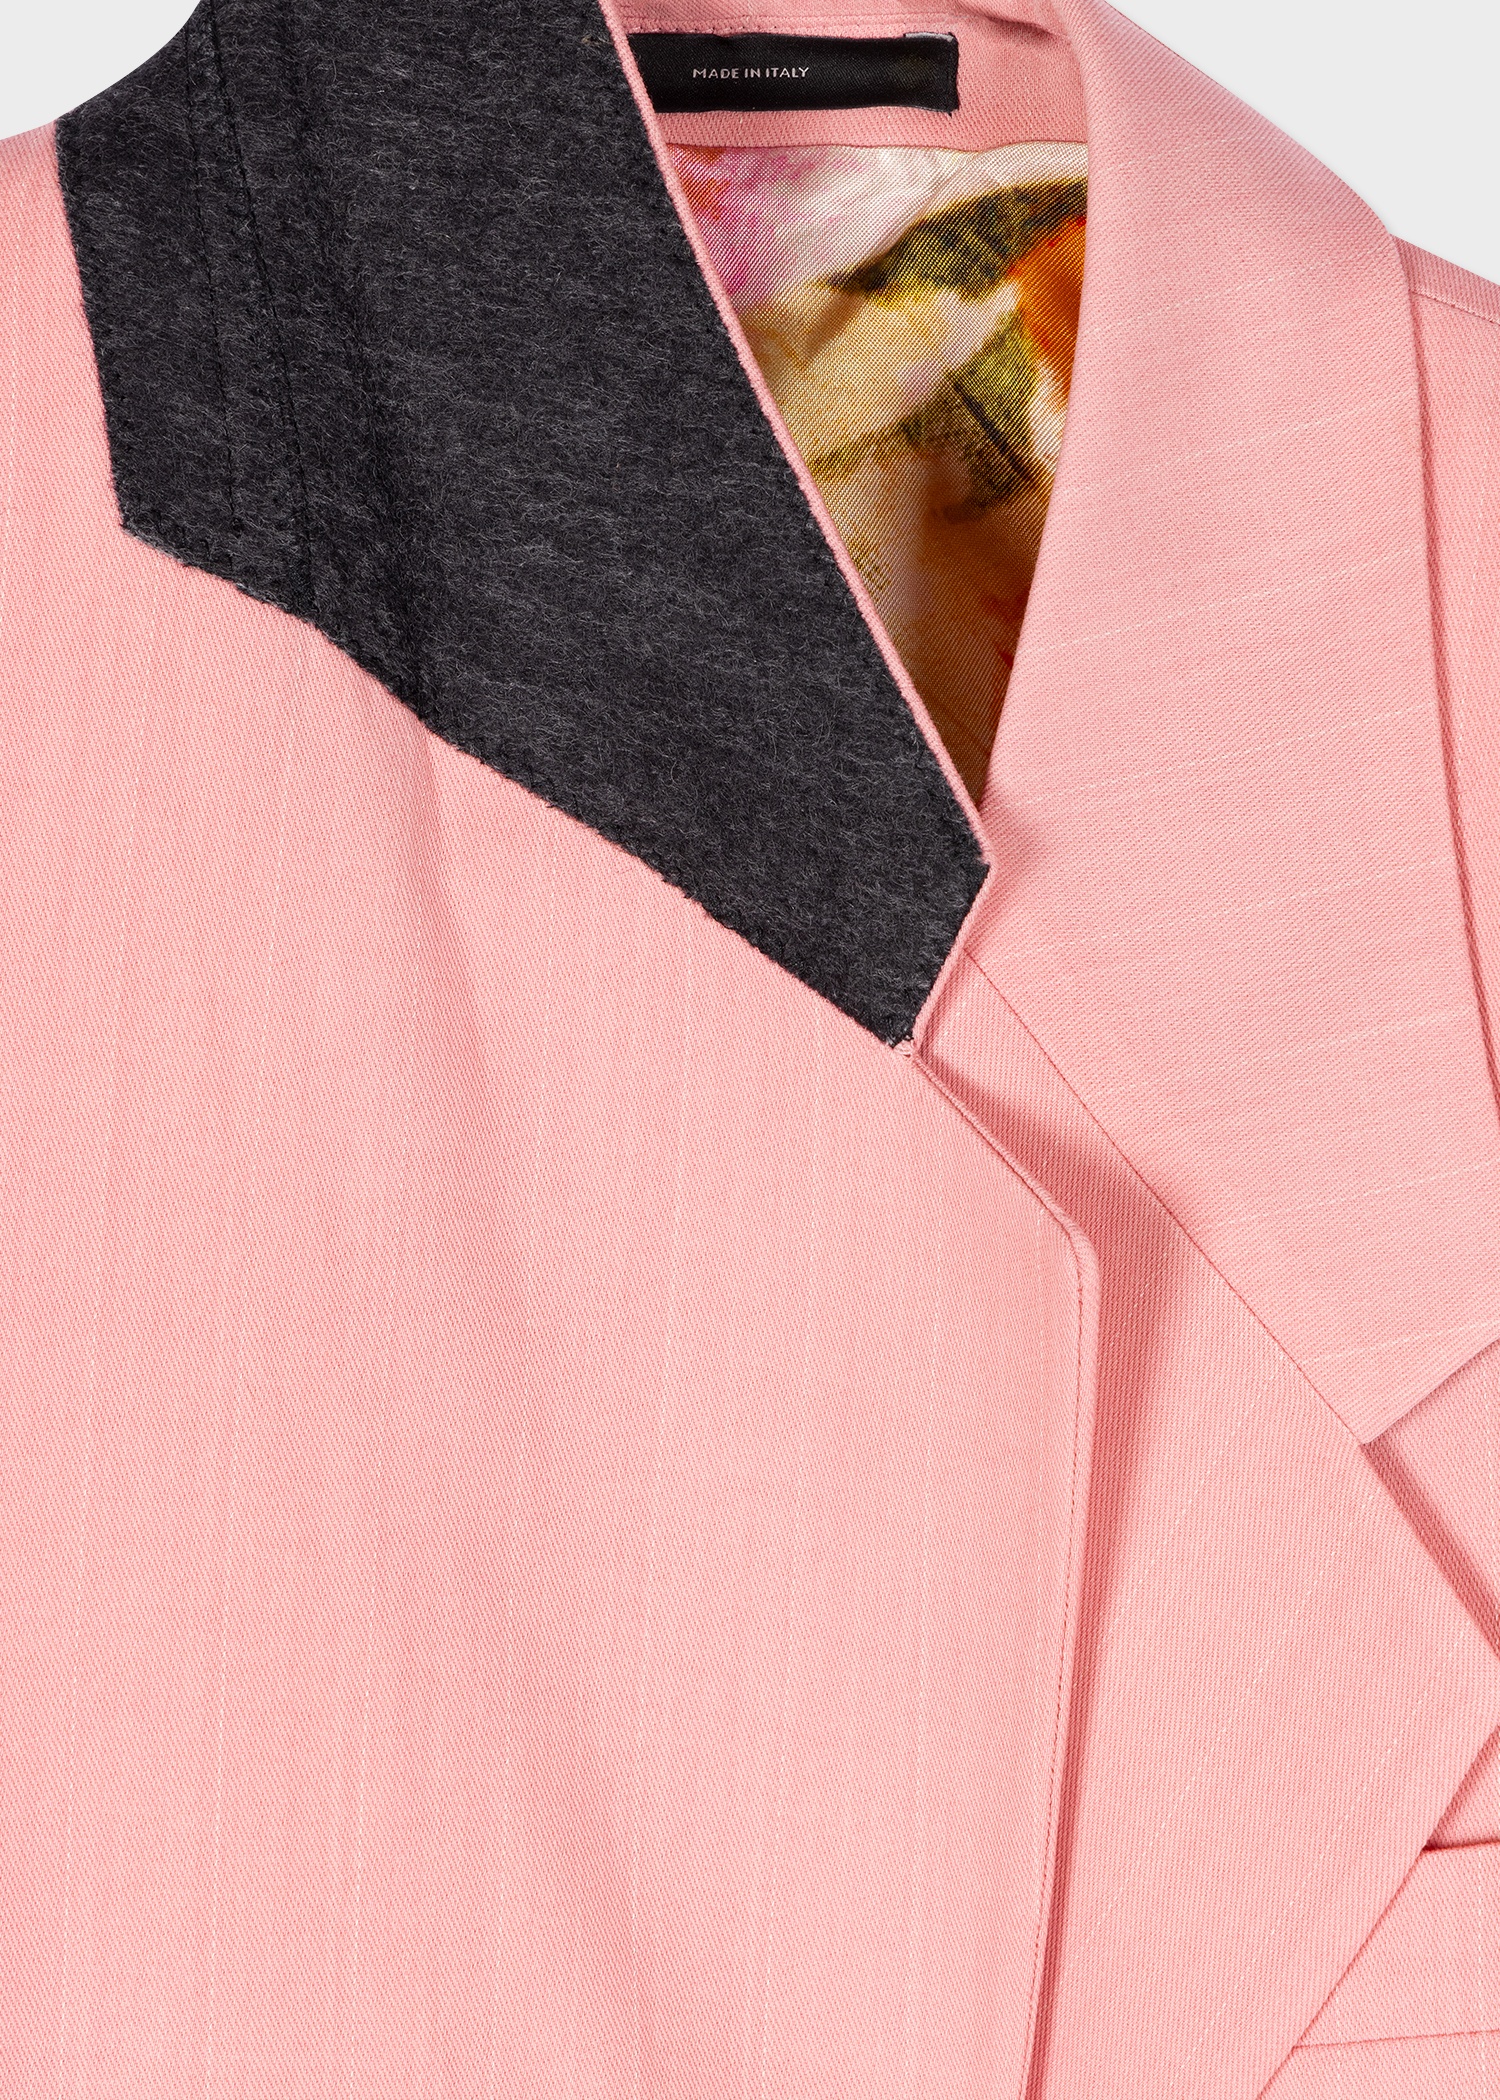 Women's Pink Pinstripe Blazer - 3